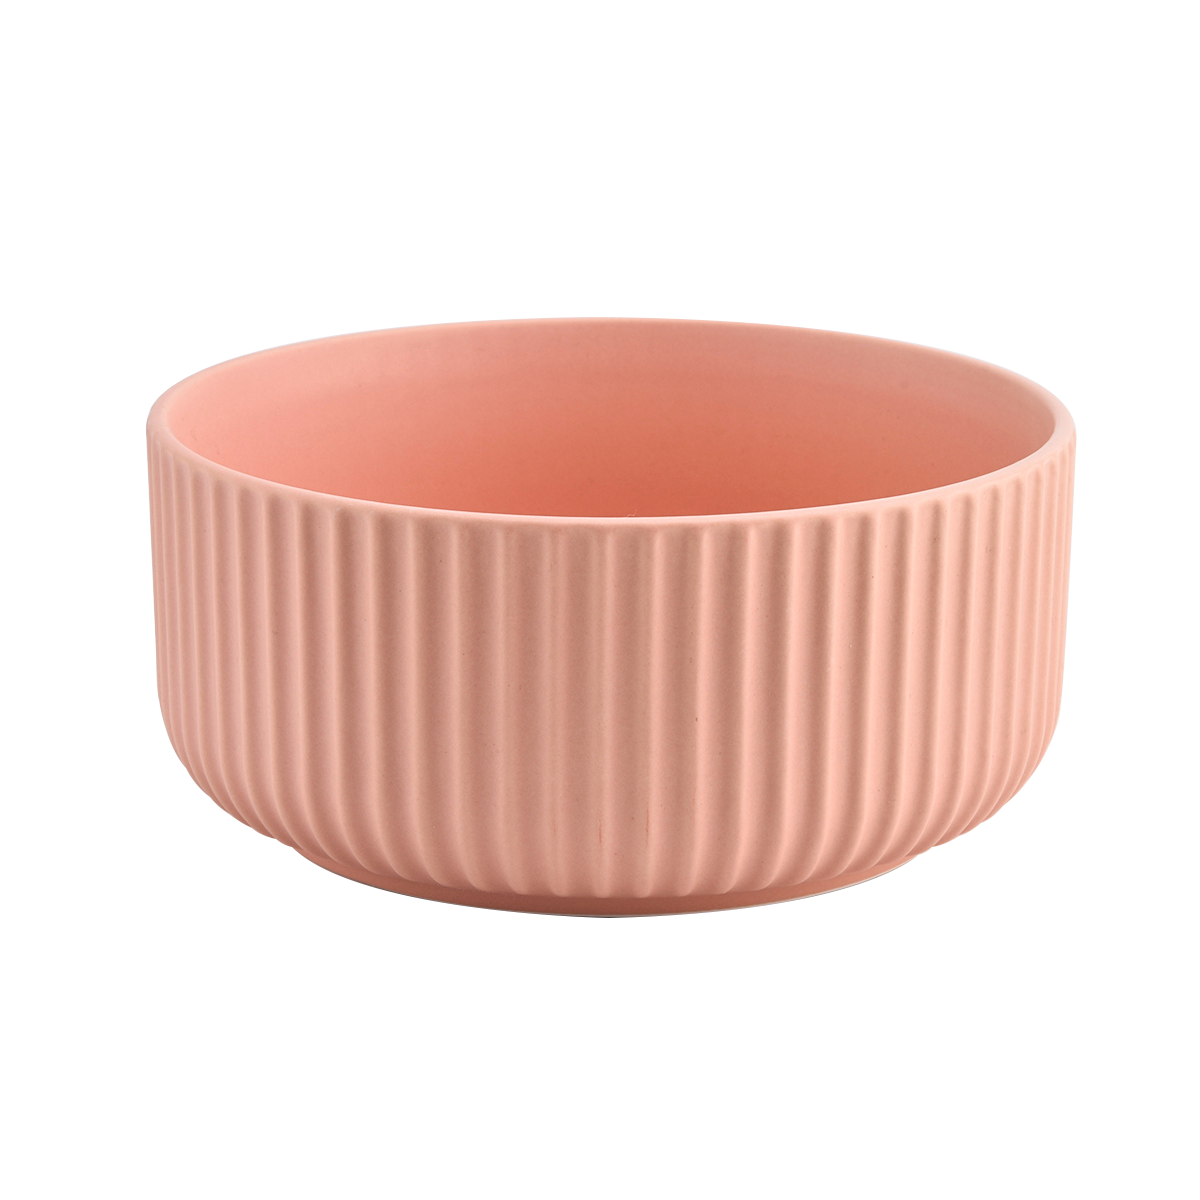 Rumah Hiasan Pink 3 Wicks Striple Ceramic Ceramic Jars